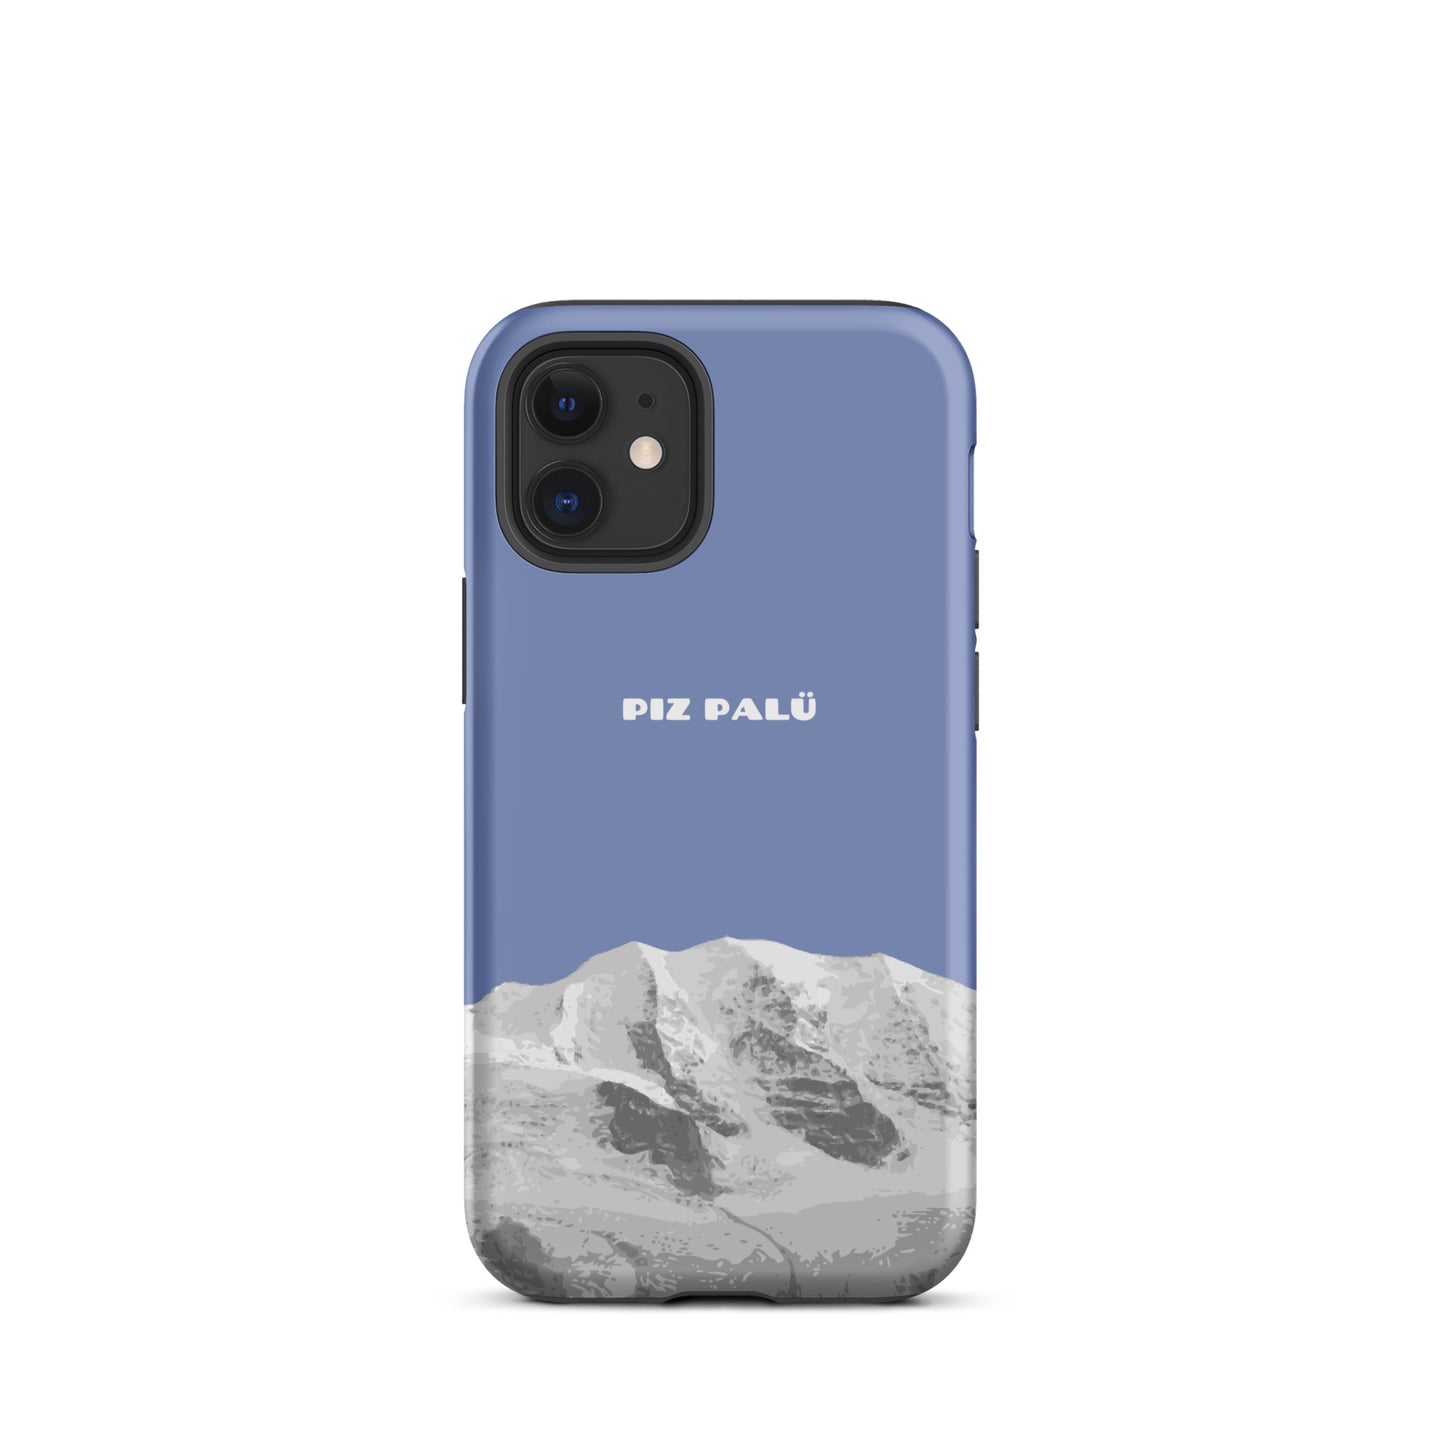 Hülle für das iPhone 121 Mini von Apple in der Farbe Pastellblau, dass den Piz Palü in Graubünden zeigt.